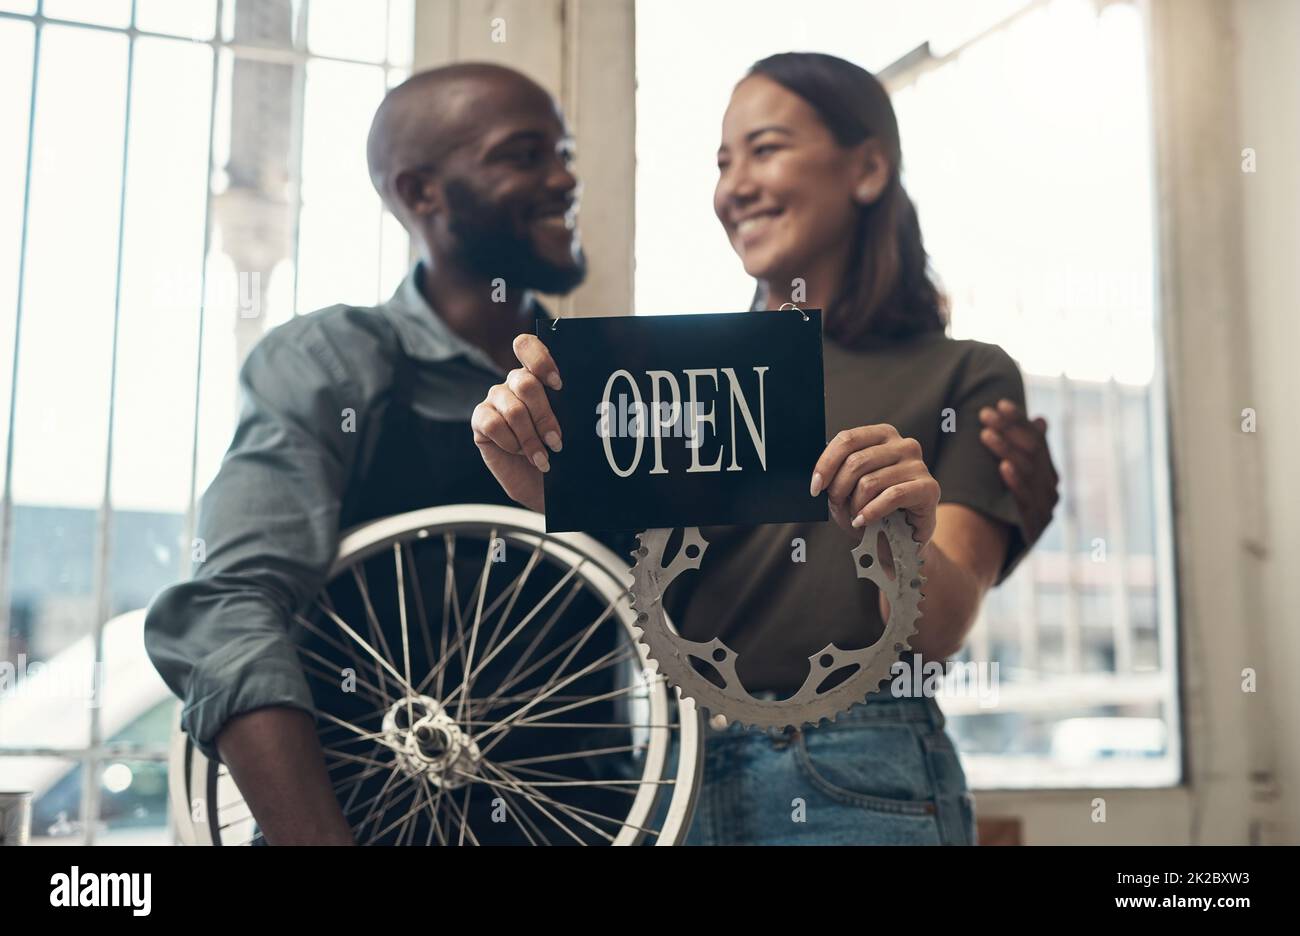 Votre vélo est entre de bonnes mains ici. Photo d'un jeune couple debout ensemble dans leur magasin de vélos et tenant un panneau ouvert. Banque D'Images